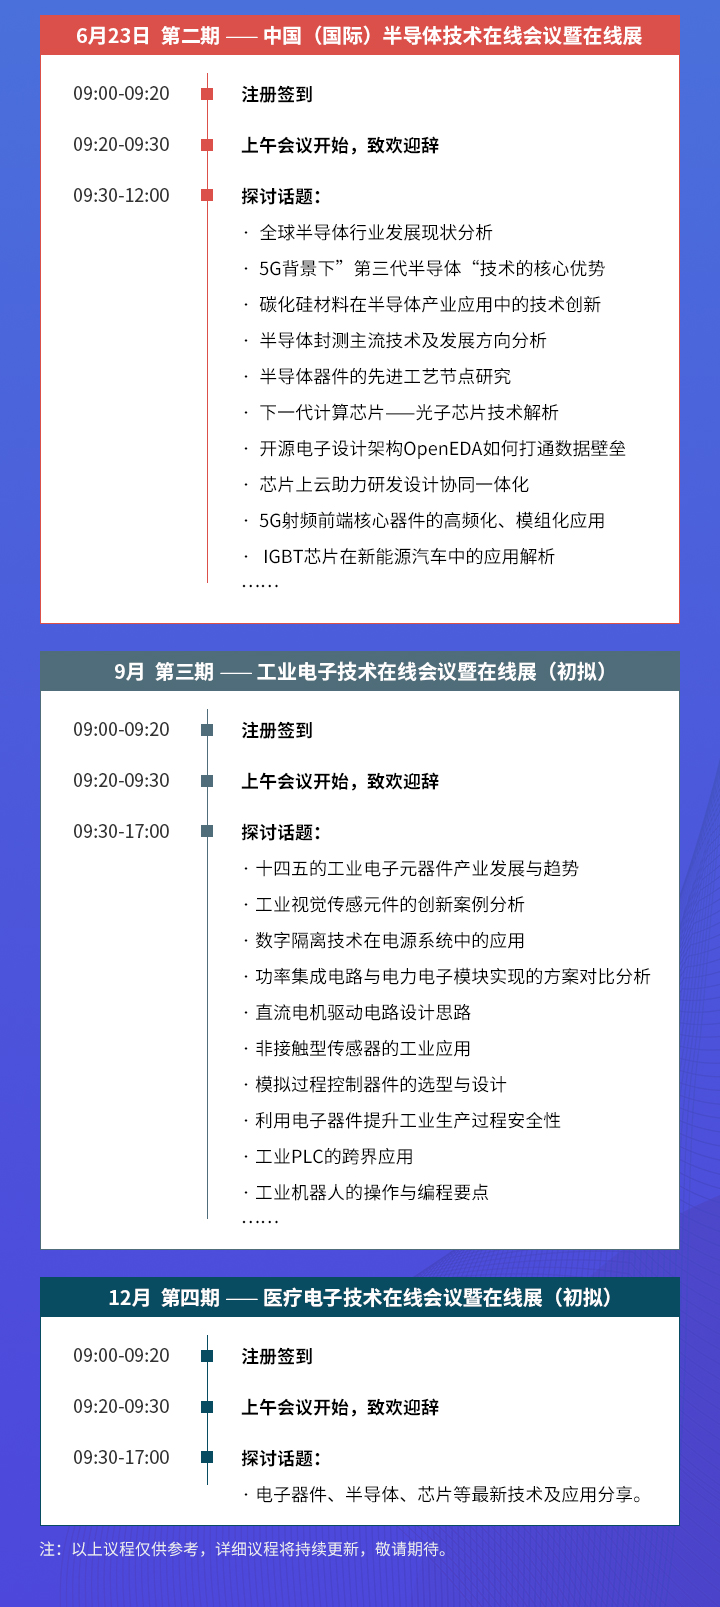 OFweek 中国（国际）半导体技术在线会议